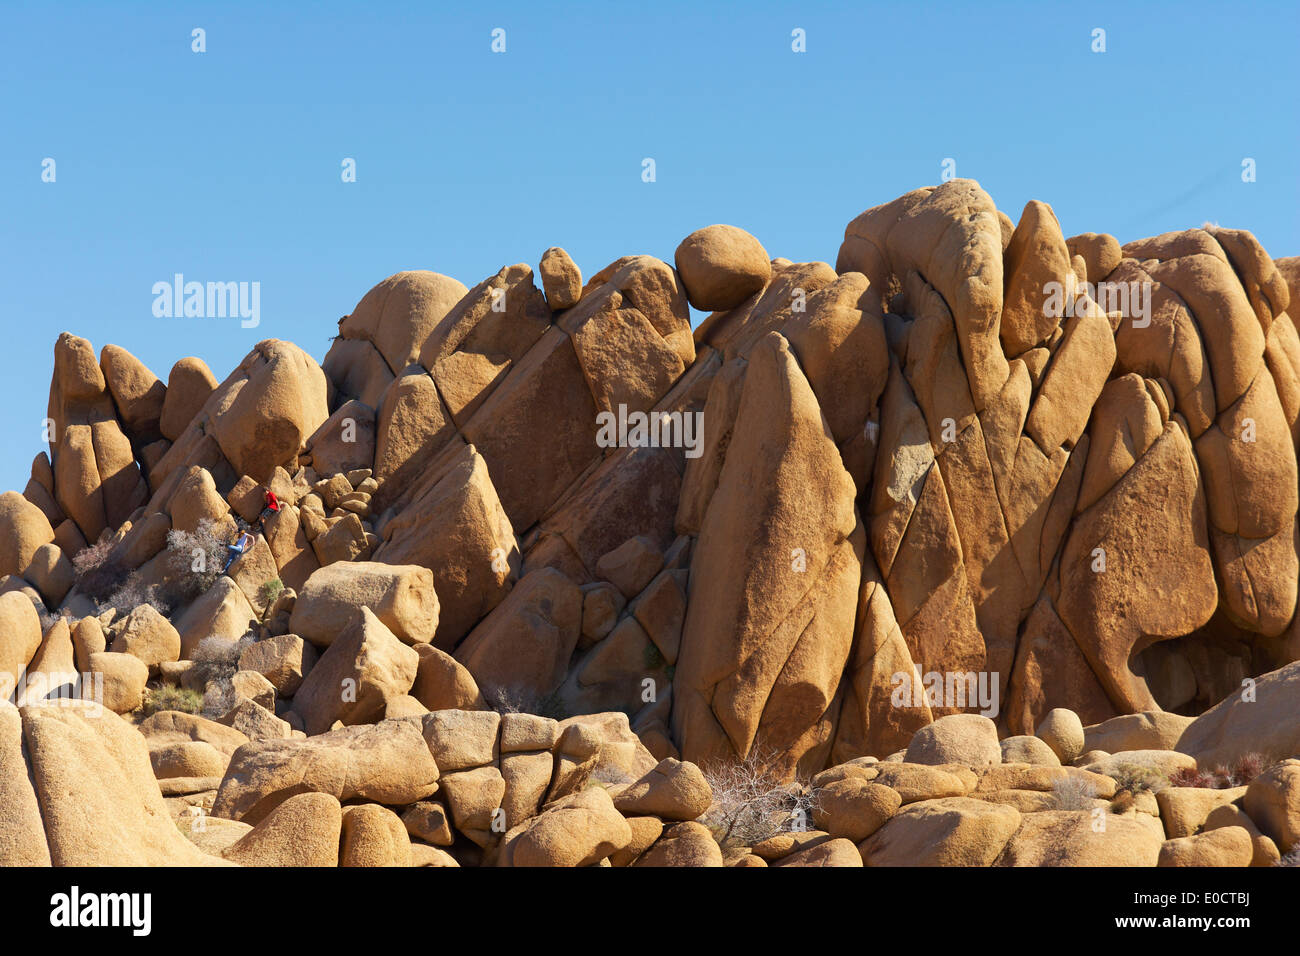 Des pierres à Jumbo Joshua Tree National Park, désert de Mojave, formation en pierre, California, USA, Amérique Latine Banque D'Images